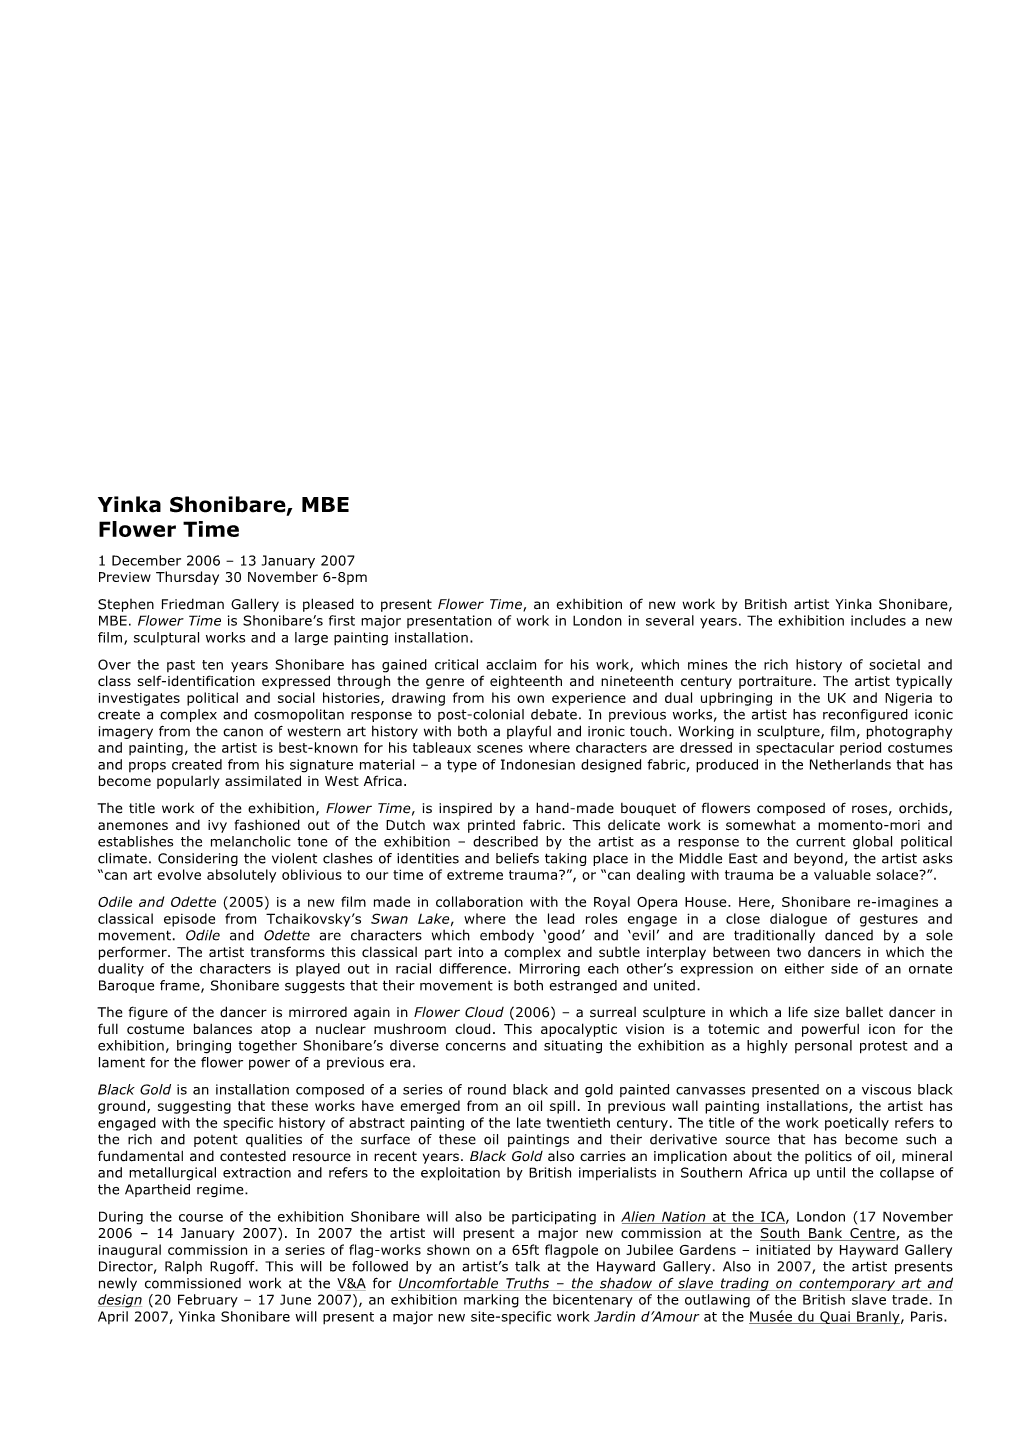 Press Release Shonibare 2006